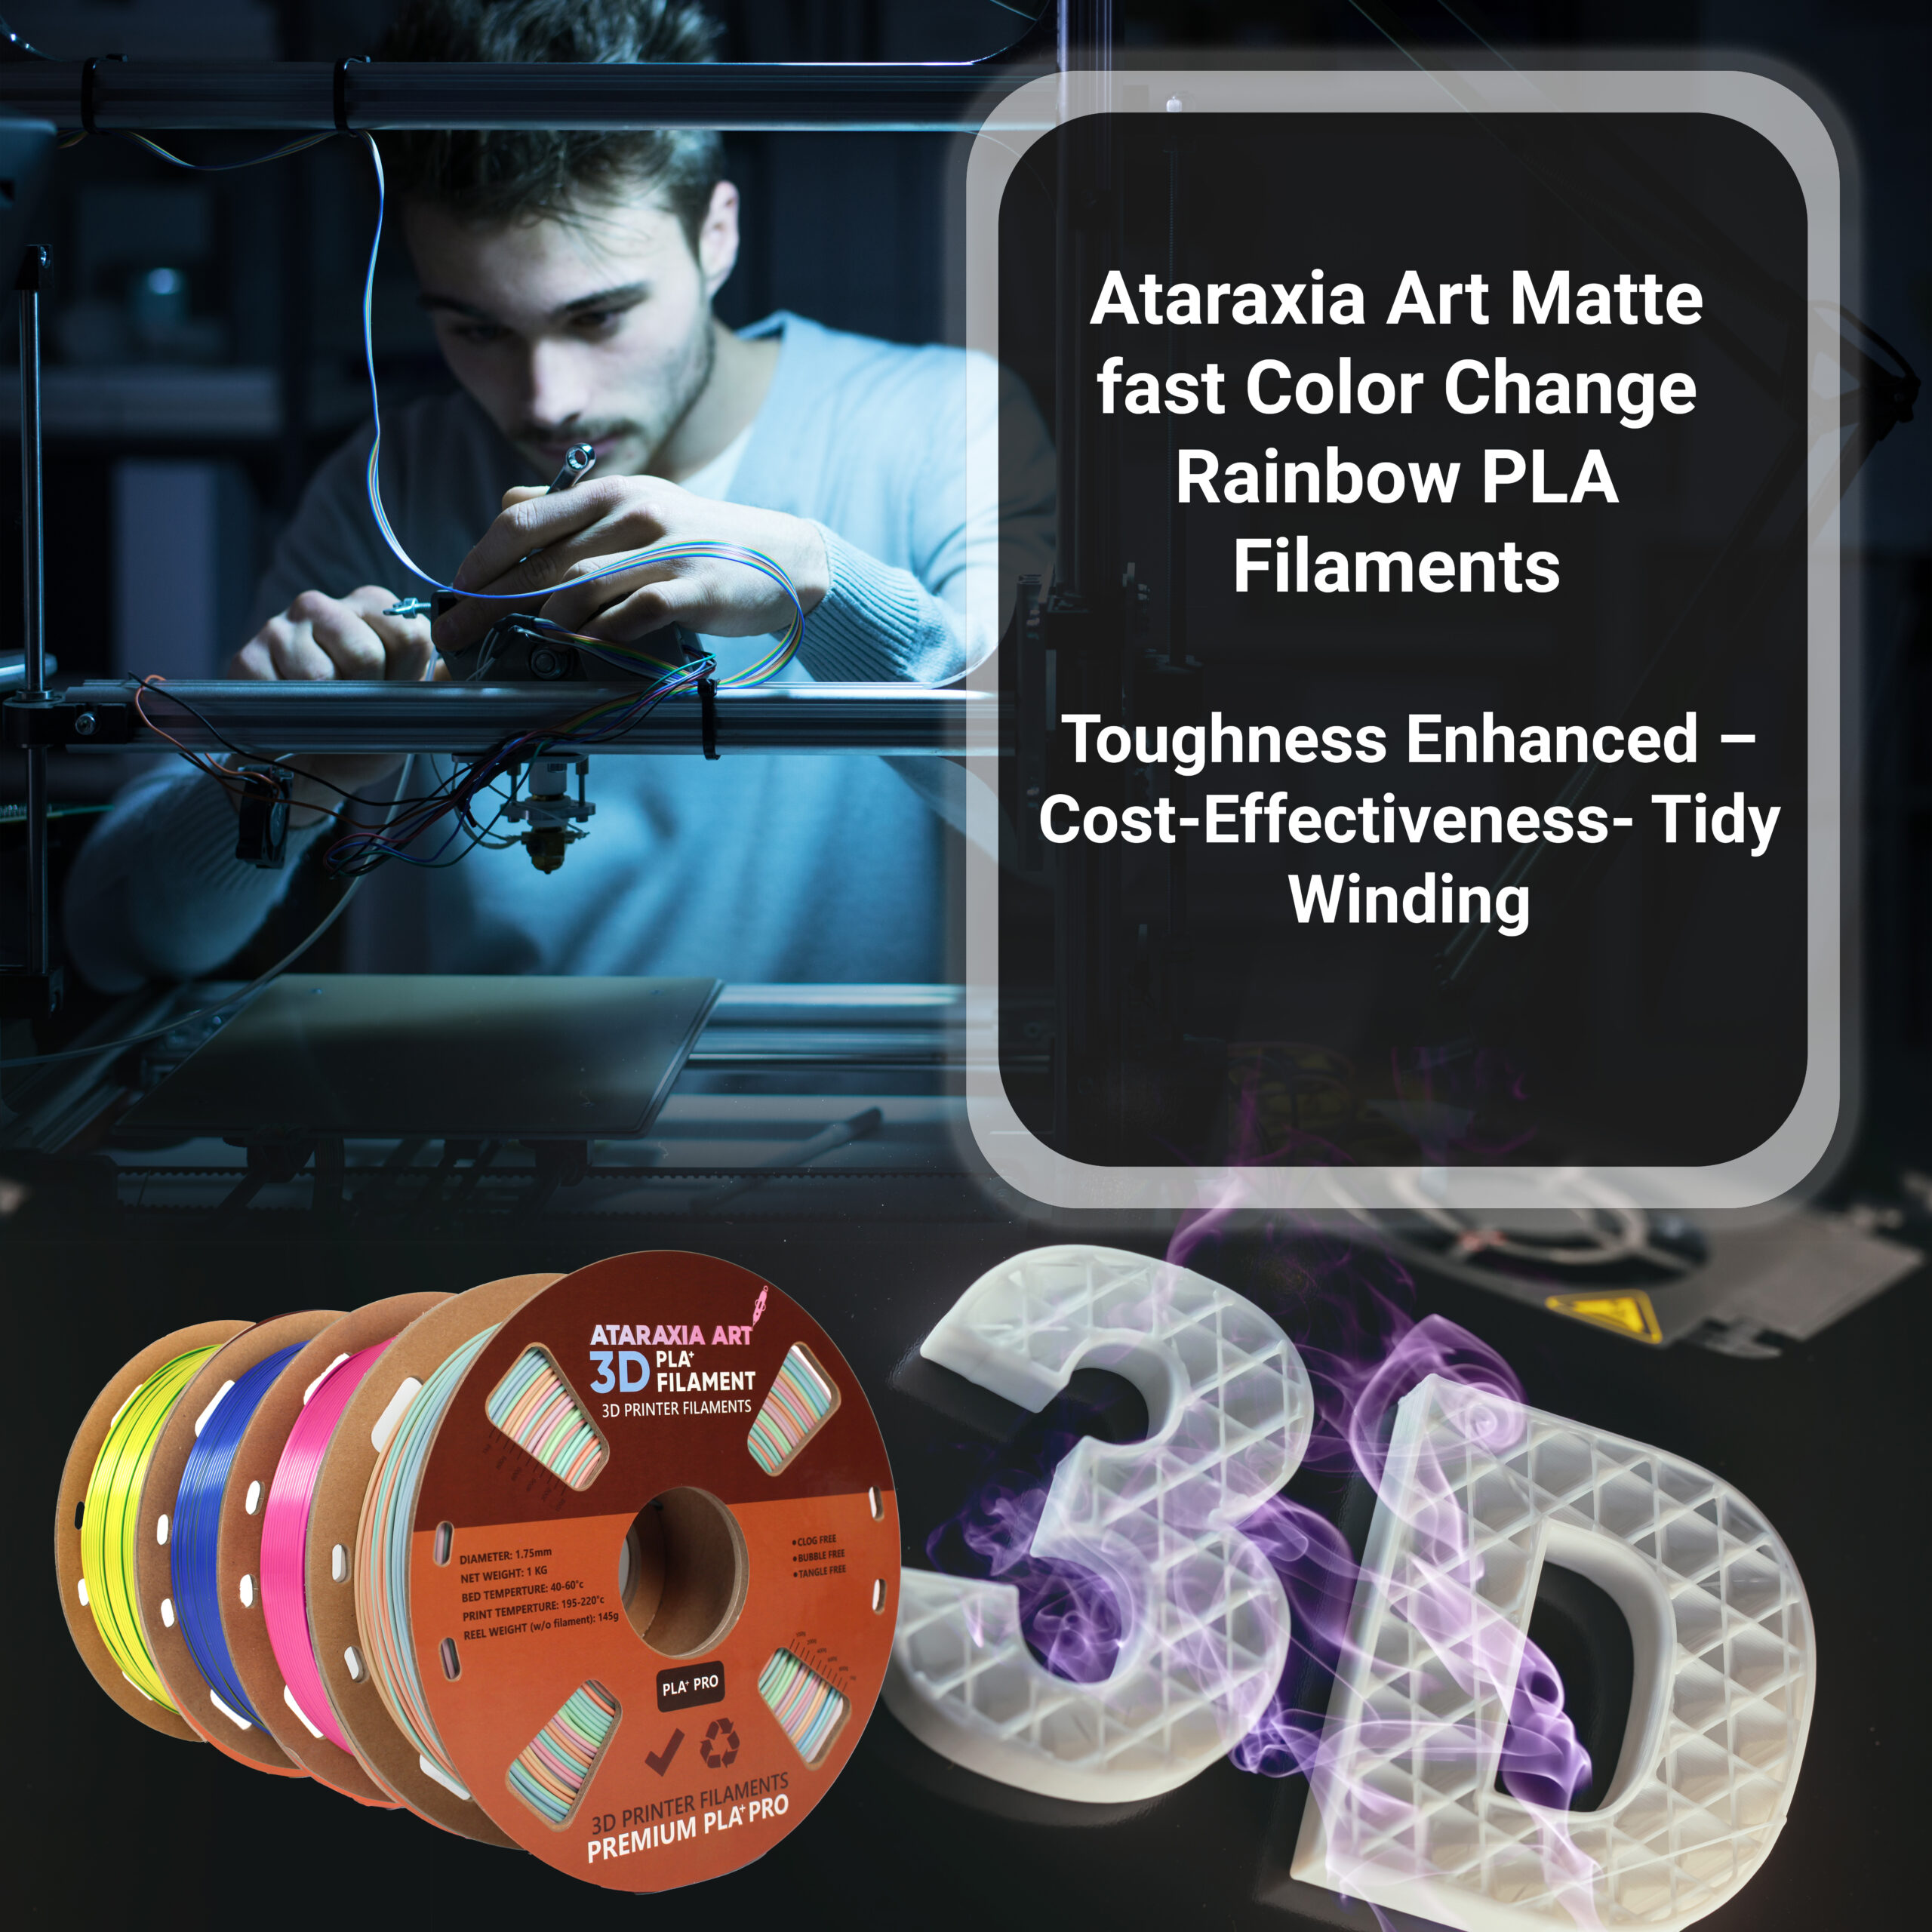 Ataraxia Art Macaron Fast Color change Matte Rainbow PLA Filament 1.75mm,  Multicolor 3D Printer Filament,1kg,With Filament Storage Bag,Fit 3D Printers  • Ataraxiaart